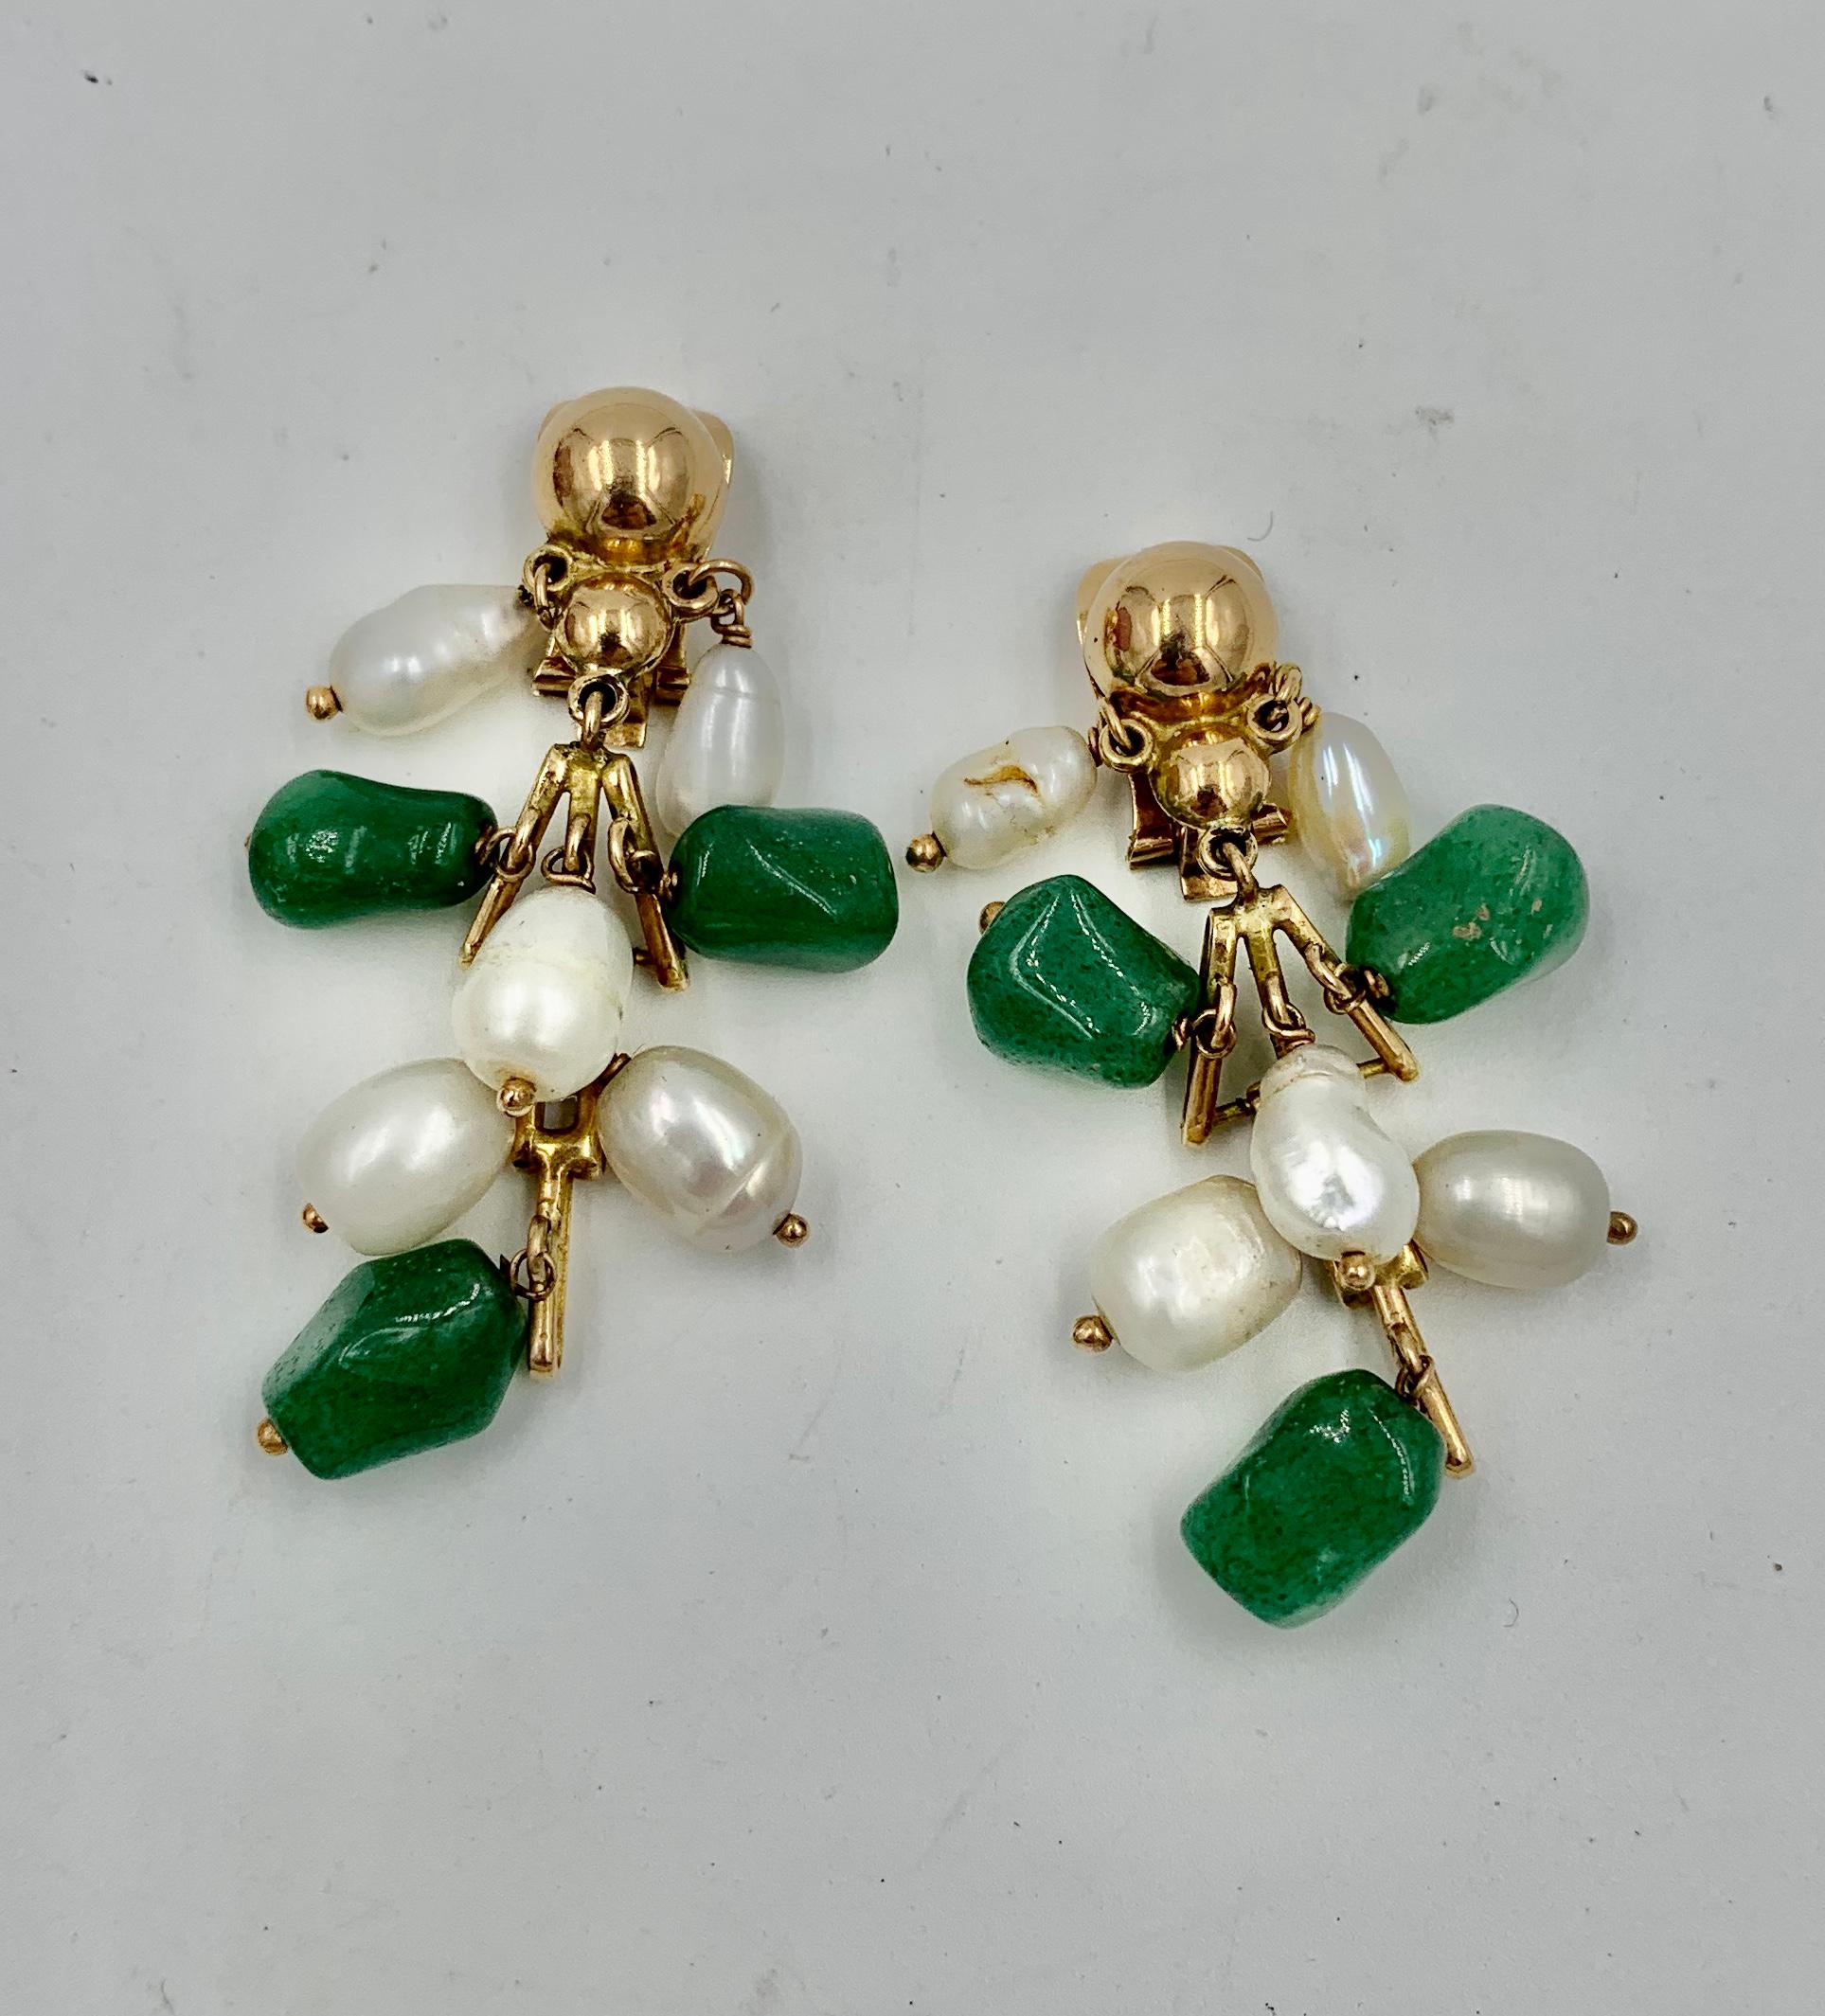 Ein entzückendes Paar Jade- und Perlen-Ohrringe in 14 Karat Gelbgold.  Die Retro-Ohrringe haben gegliederte Abschnitte aus 14-karätigem Gold mit grüner Jade und Perlen, die an dem Gold hängen.  Die Ohrringe haben eine wunderbare Bewegung und einen